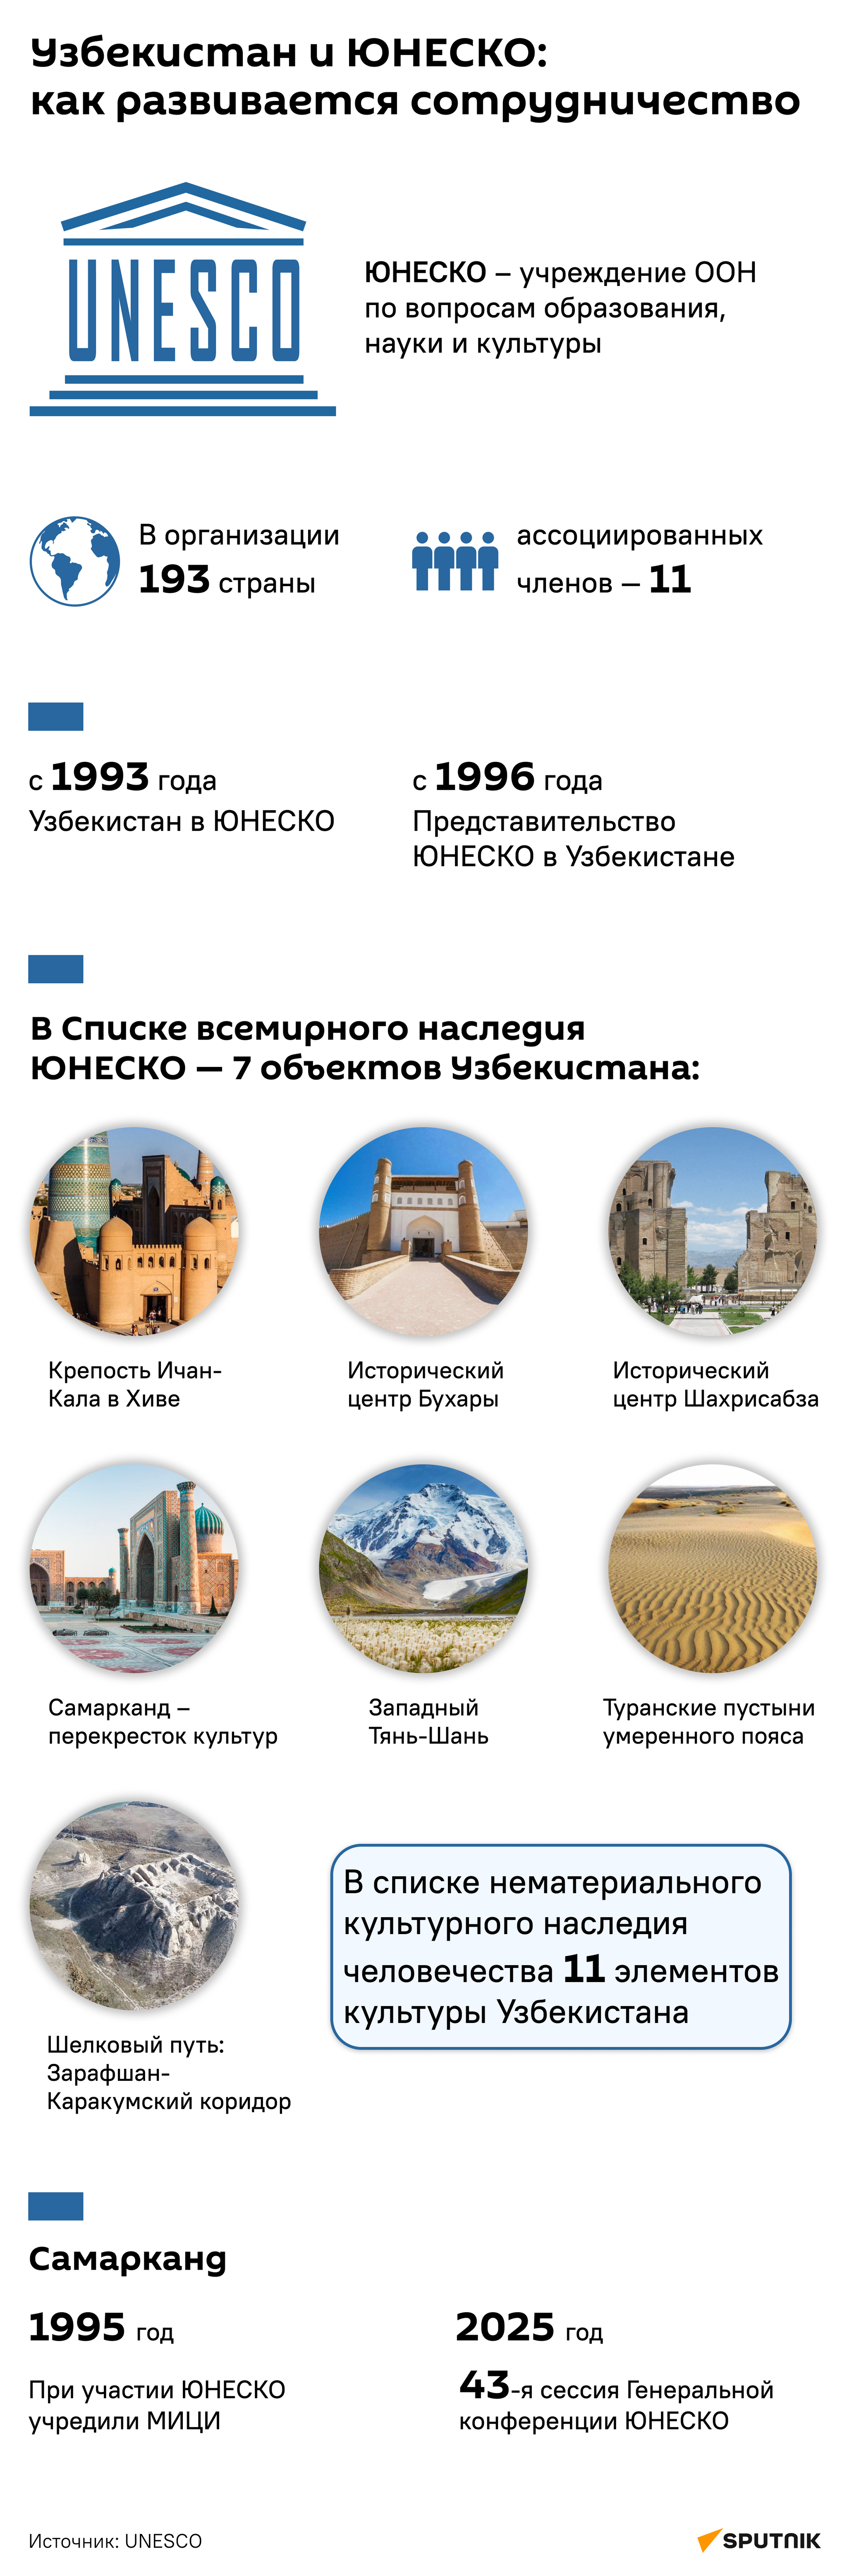 Как развивается сотрудничество Узбекистана и ЮНЕСКО. - Sputnik Узбекистан